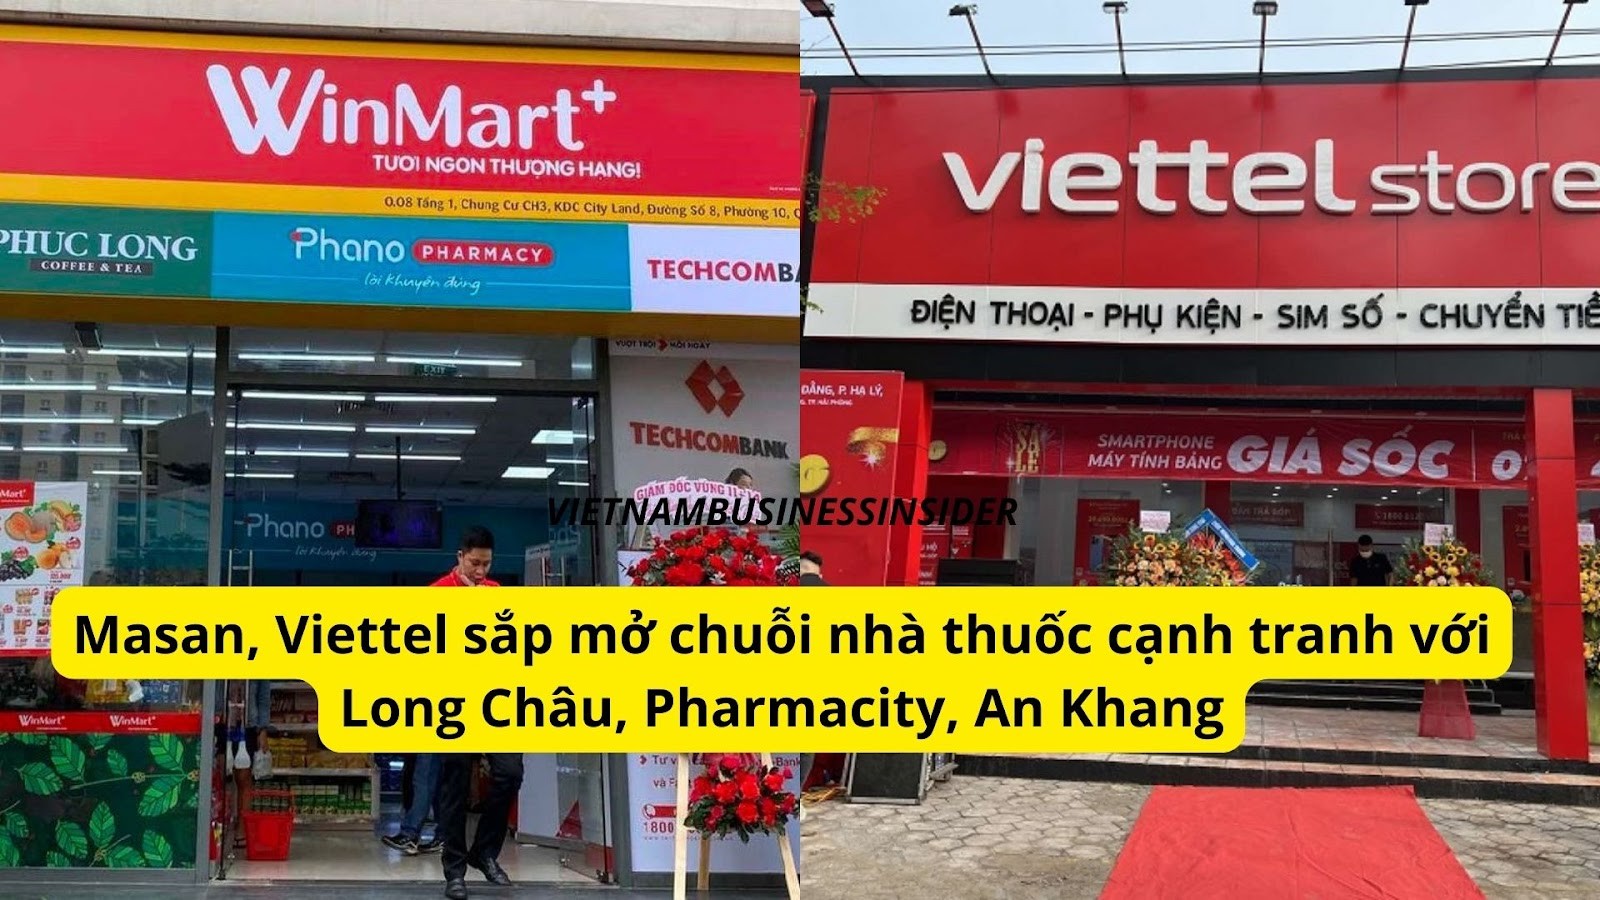 masan-viettel-sap-mo-chuoi-nha-thuoc-canh-tranh-voi-long-chau-pharmacity-an-khang-1658549108.jpg